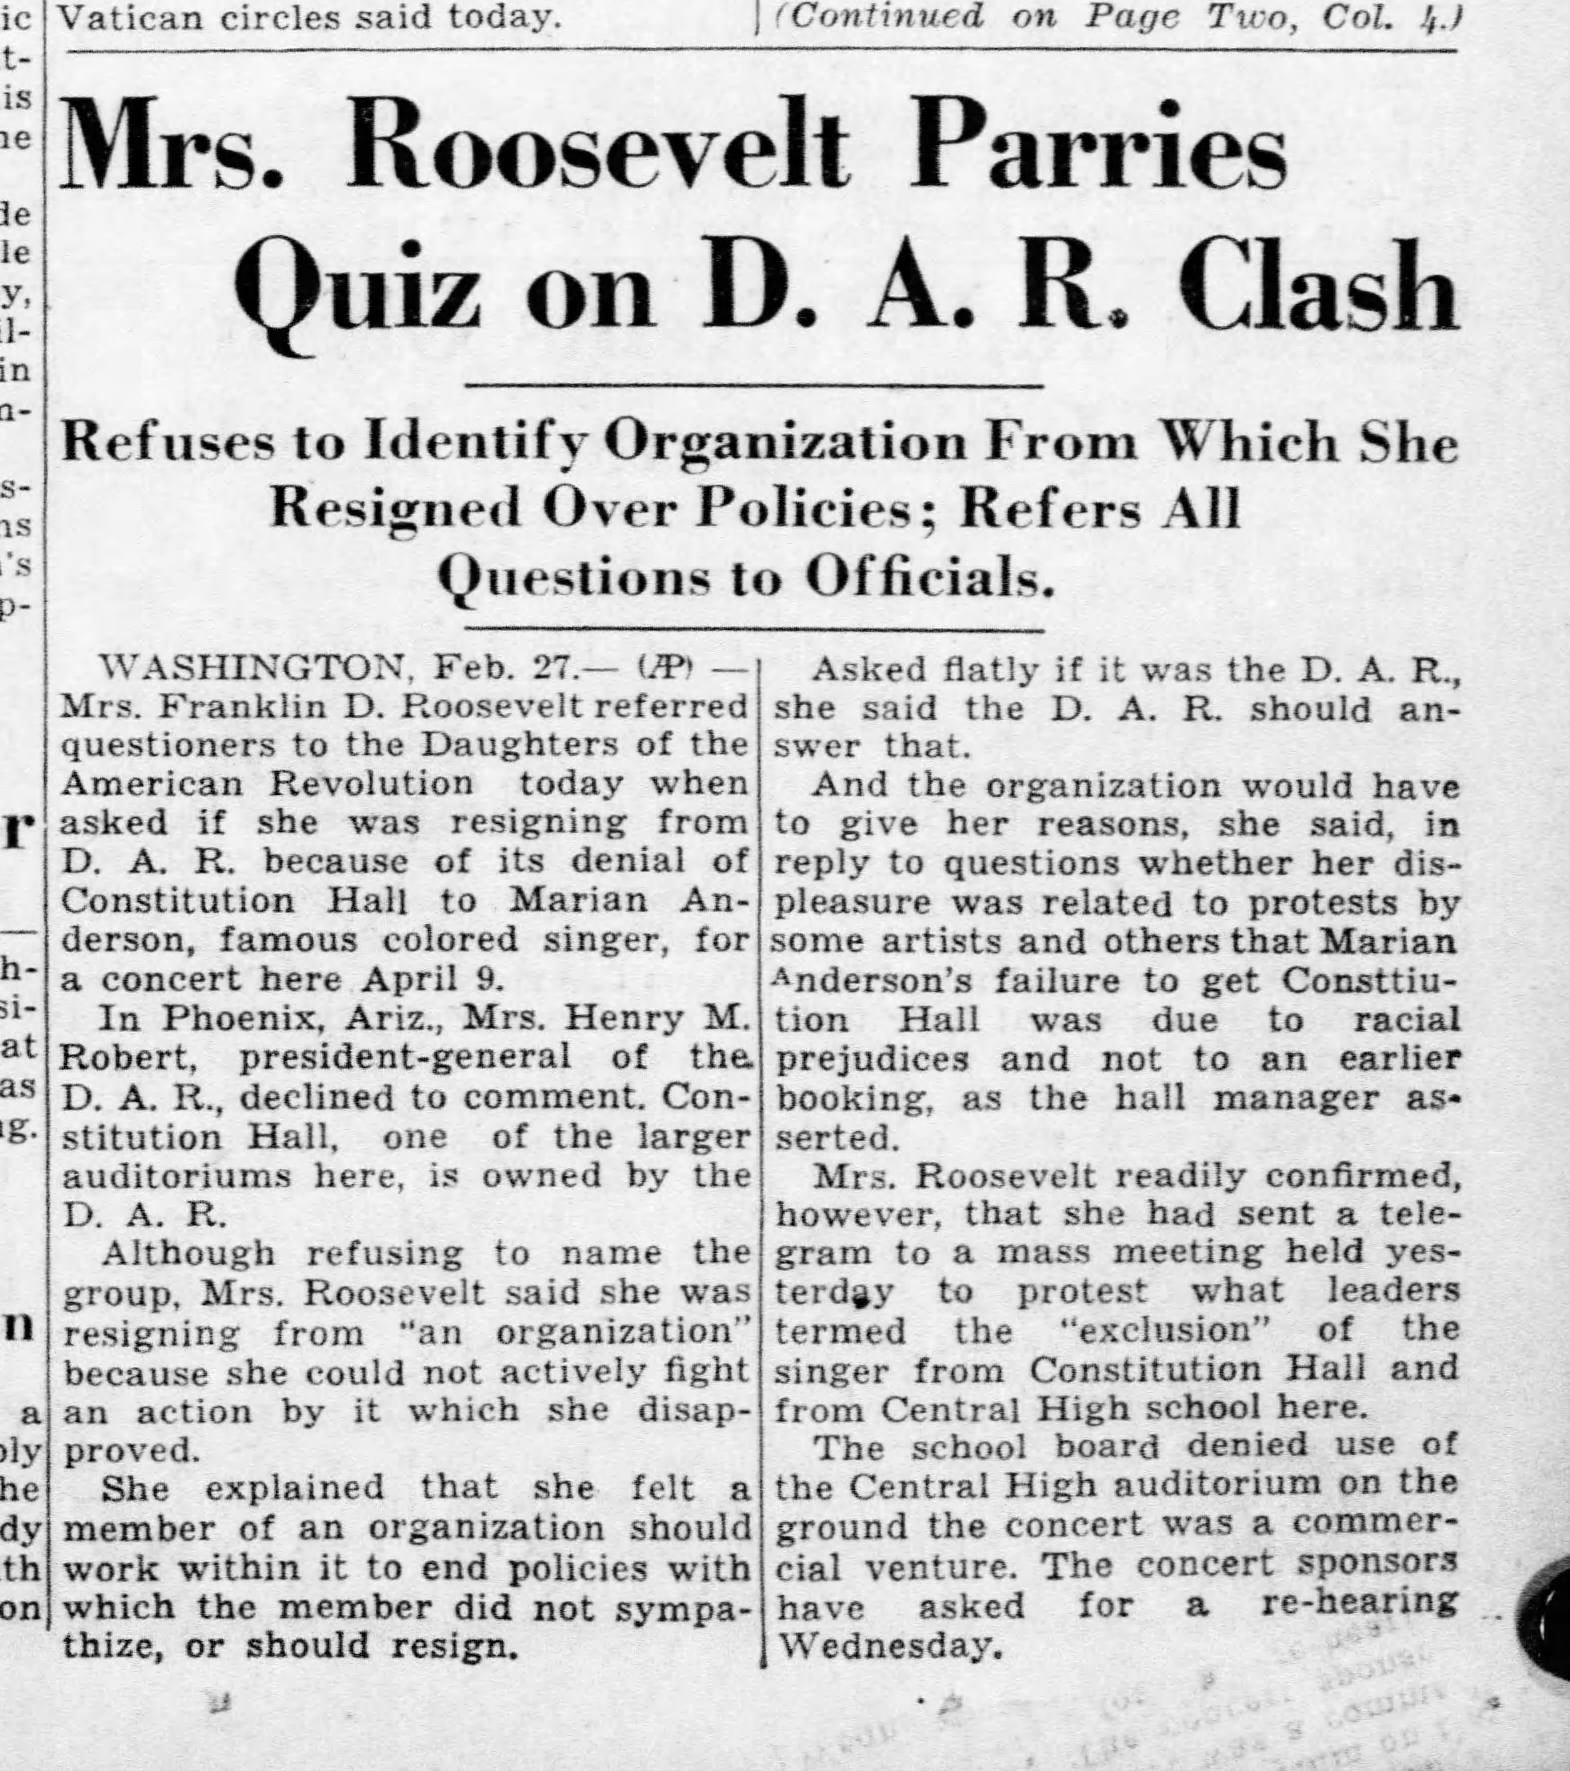 Mrs. Roosevelt Parries Quiz on D.A.R. Clash